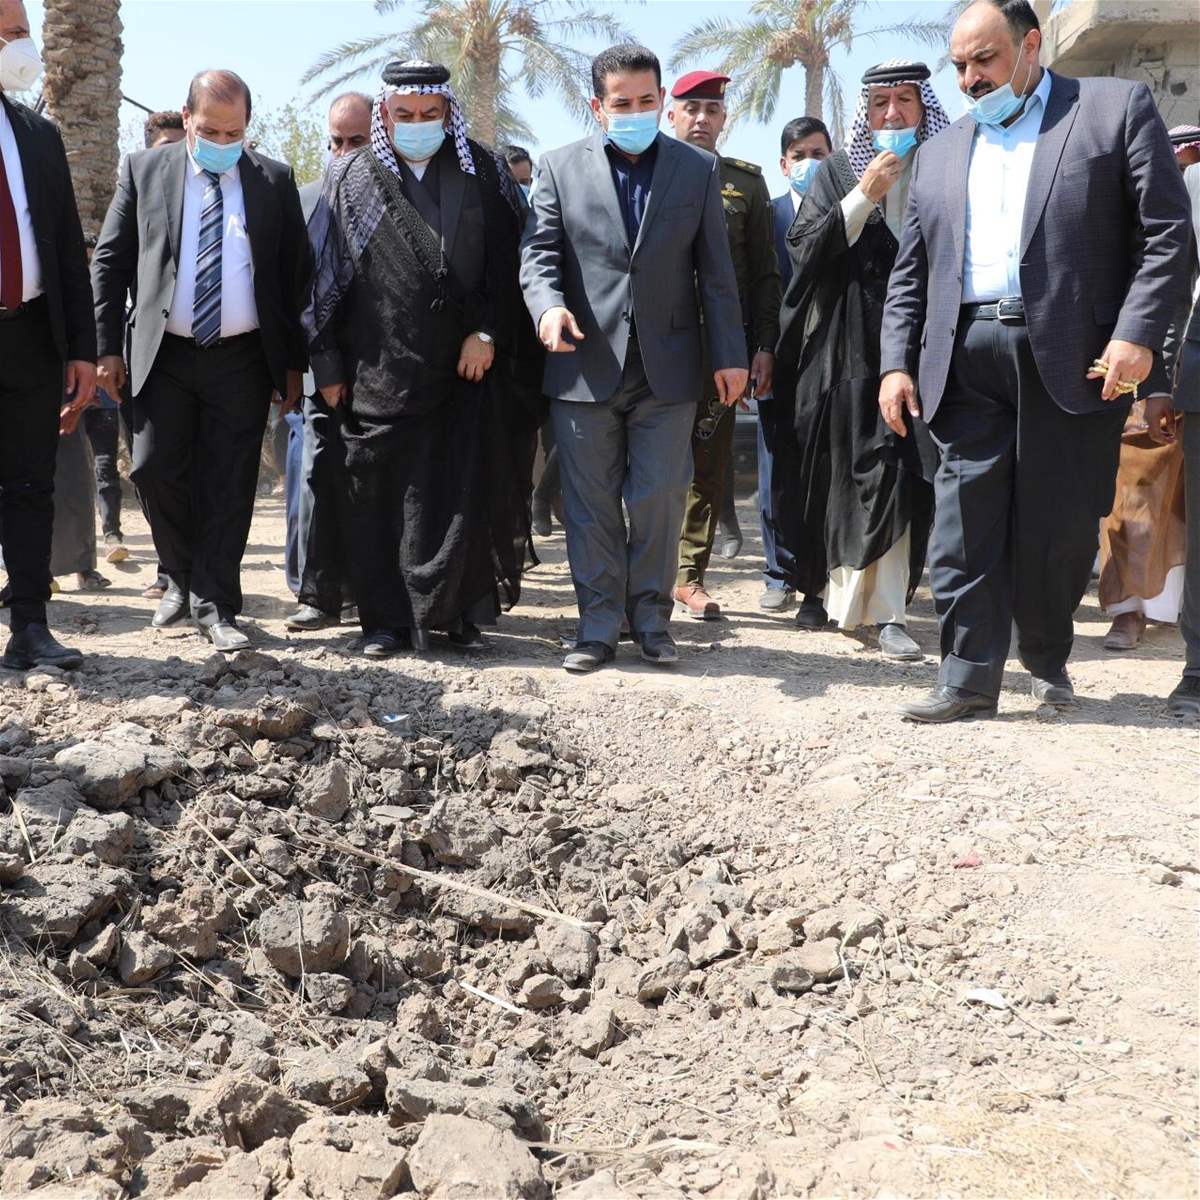 ليطلع الشعب العراقي على اراء السياسيين بعد مقتل عائلة سنية بابي غريب بصاروخ دقيق من المقاومة الاسلامية